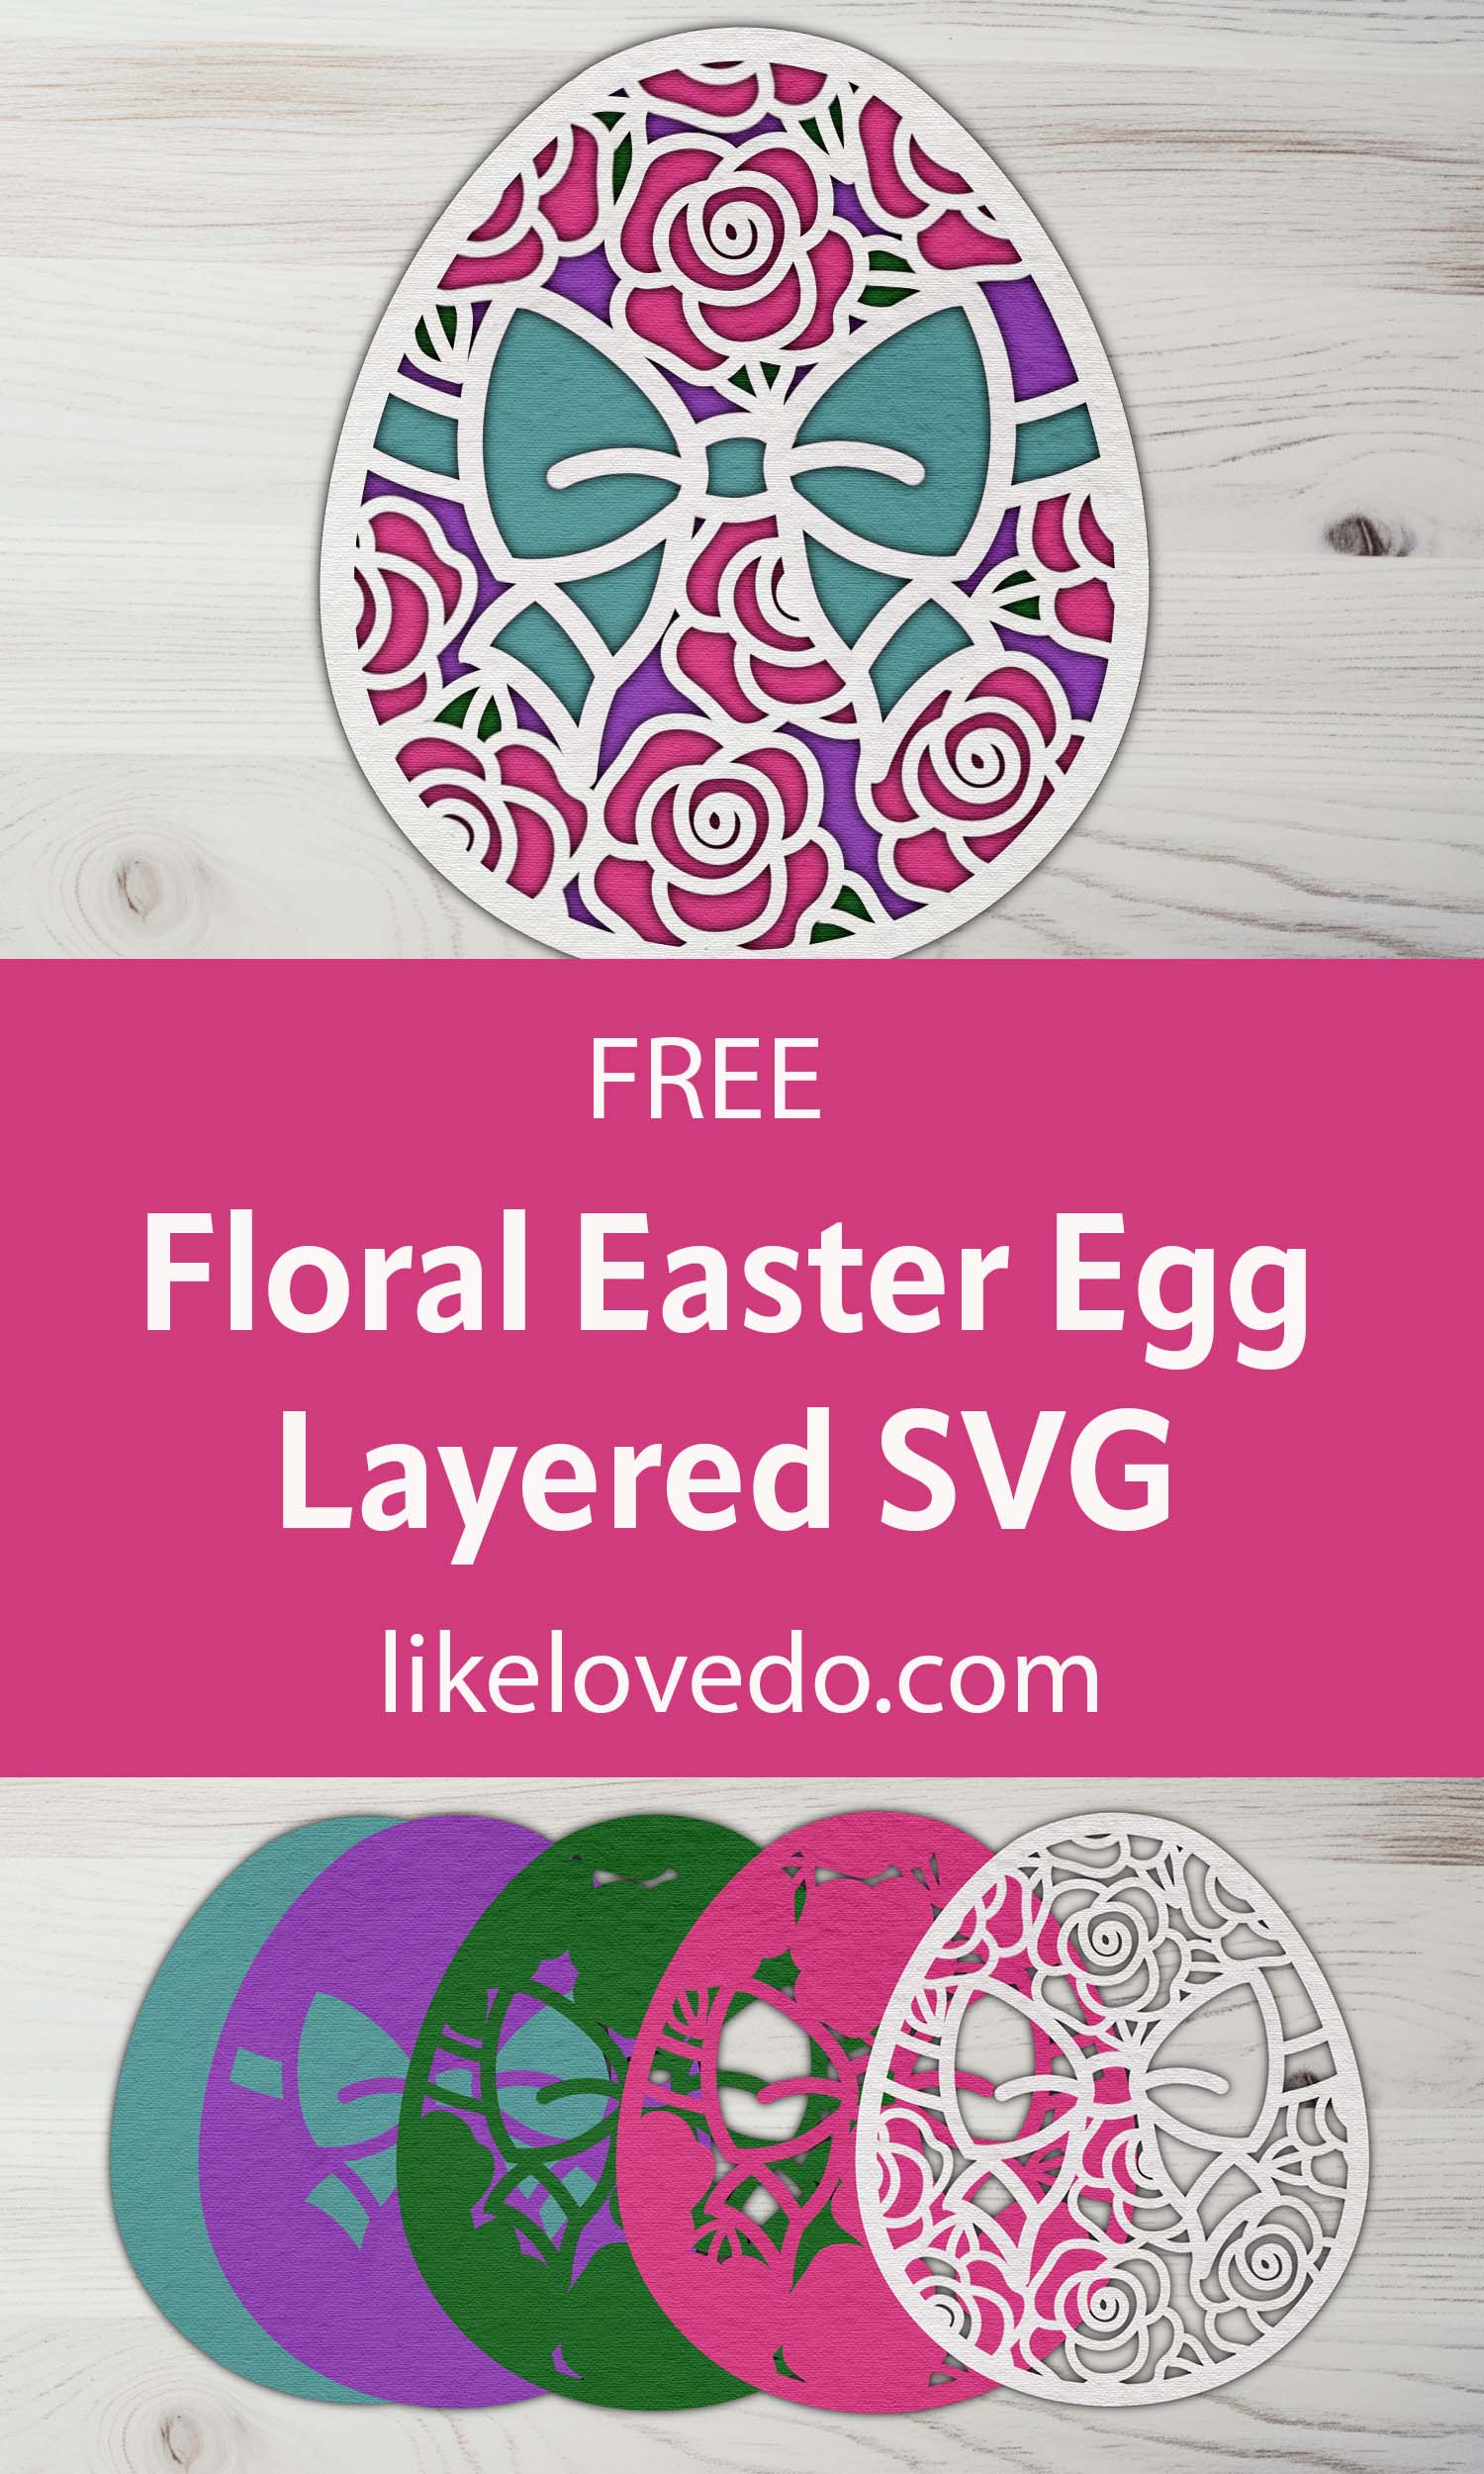 Layered Floral Easter Egg SVG